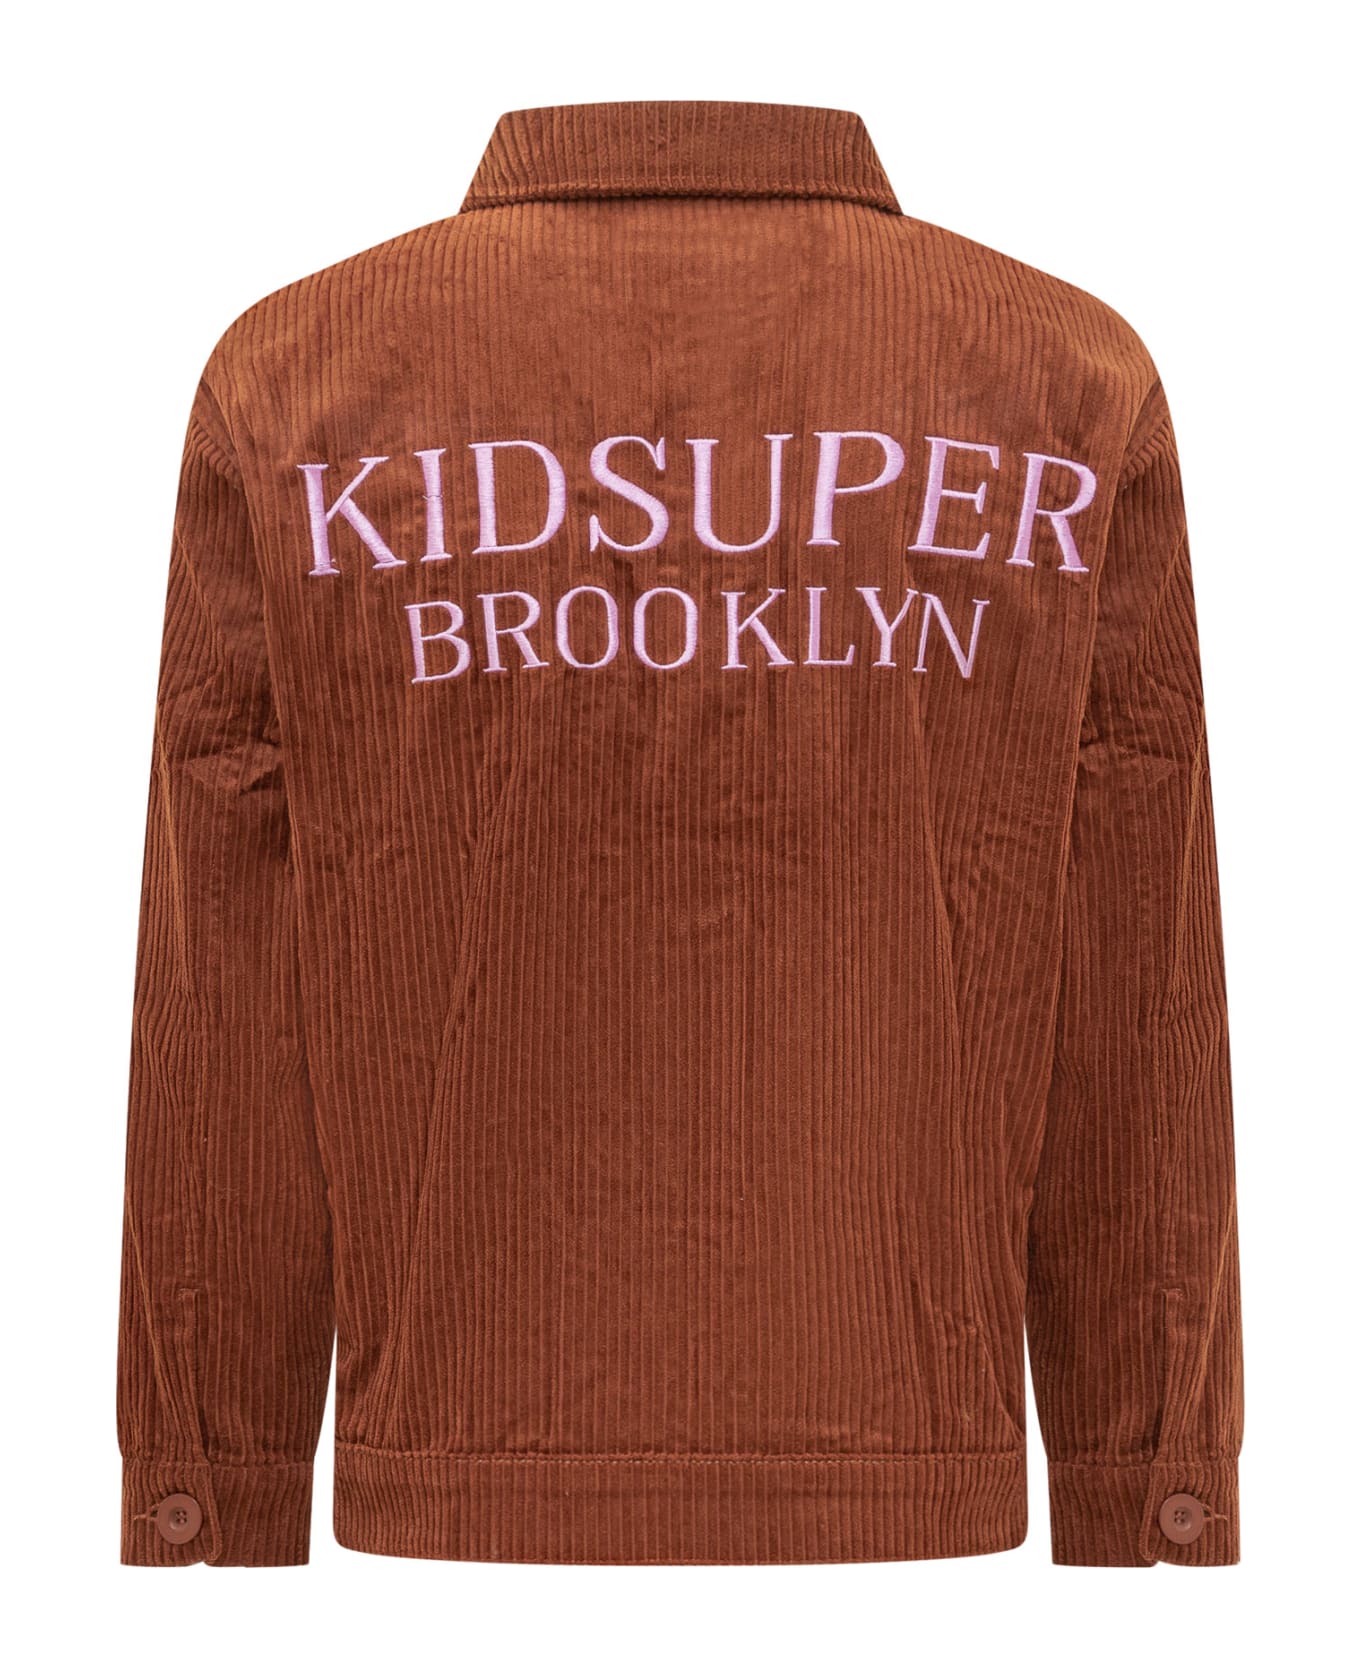 Kidsuper Brown Cord Jacket - BROWN